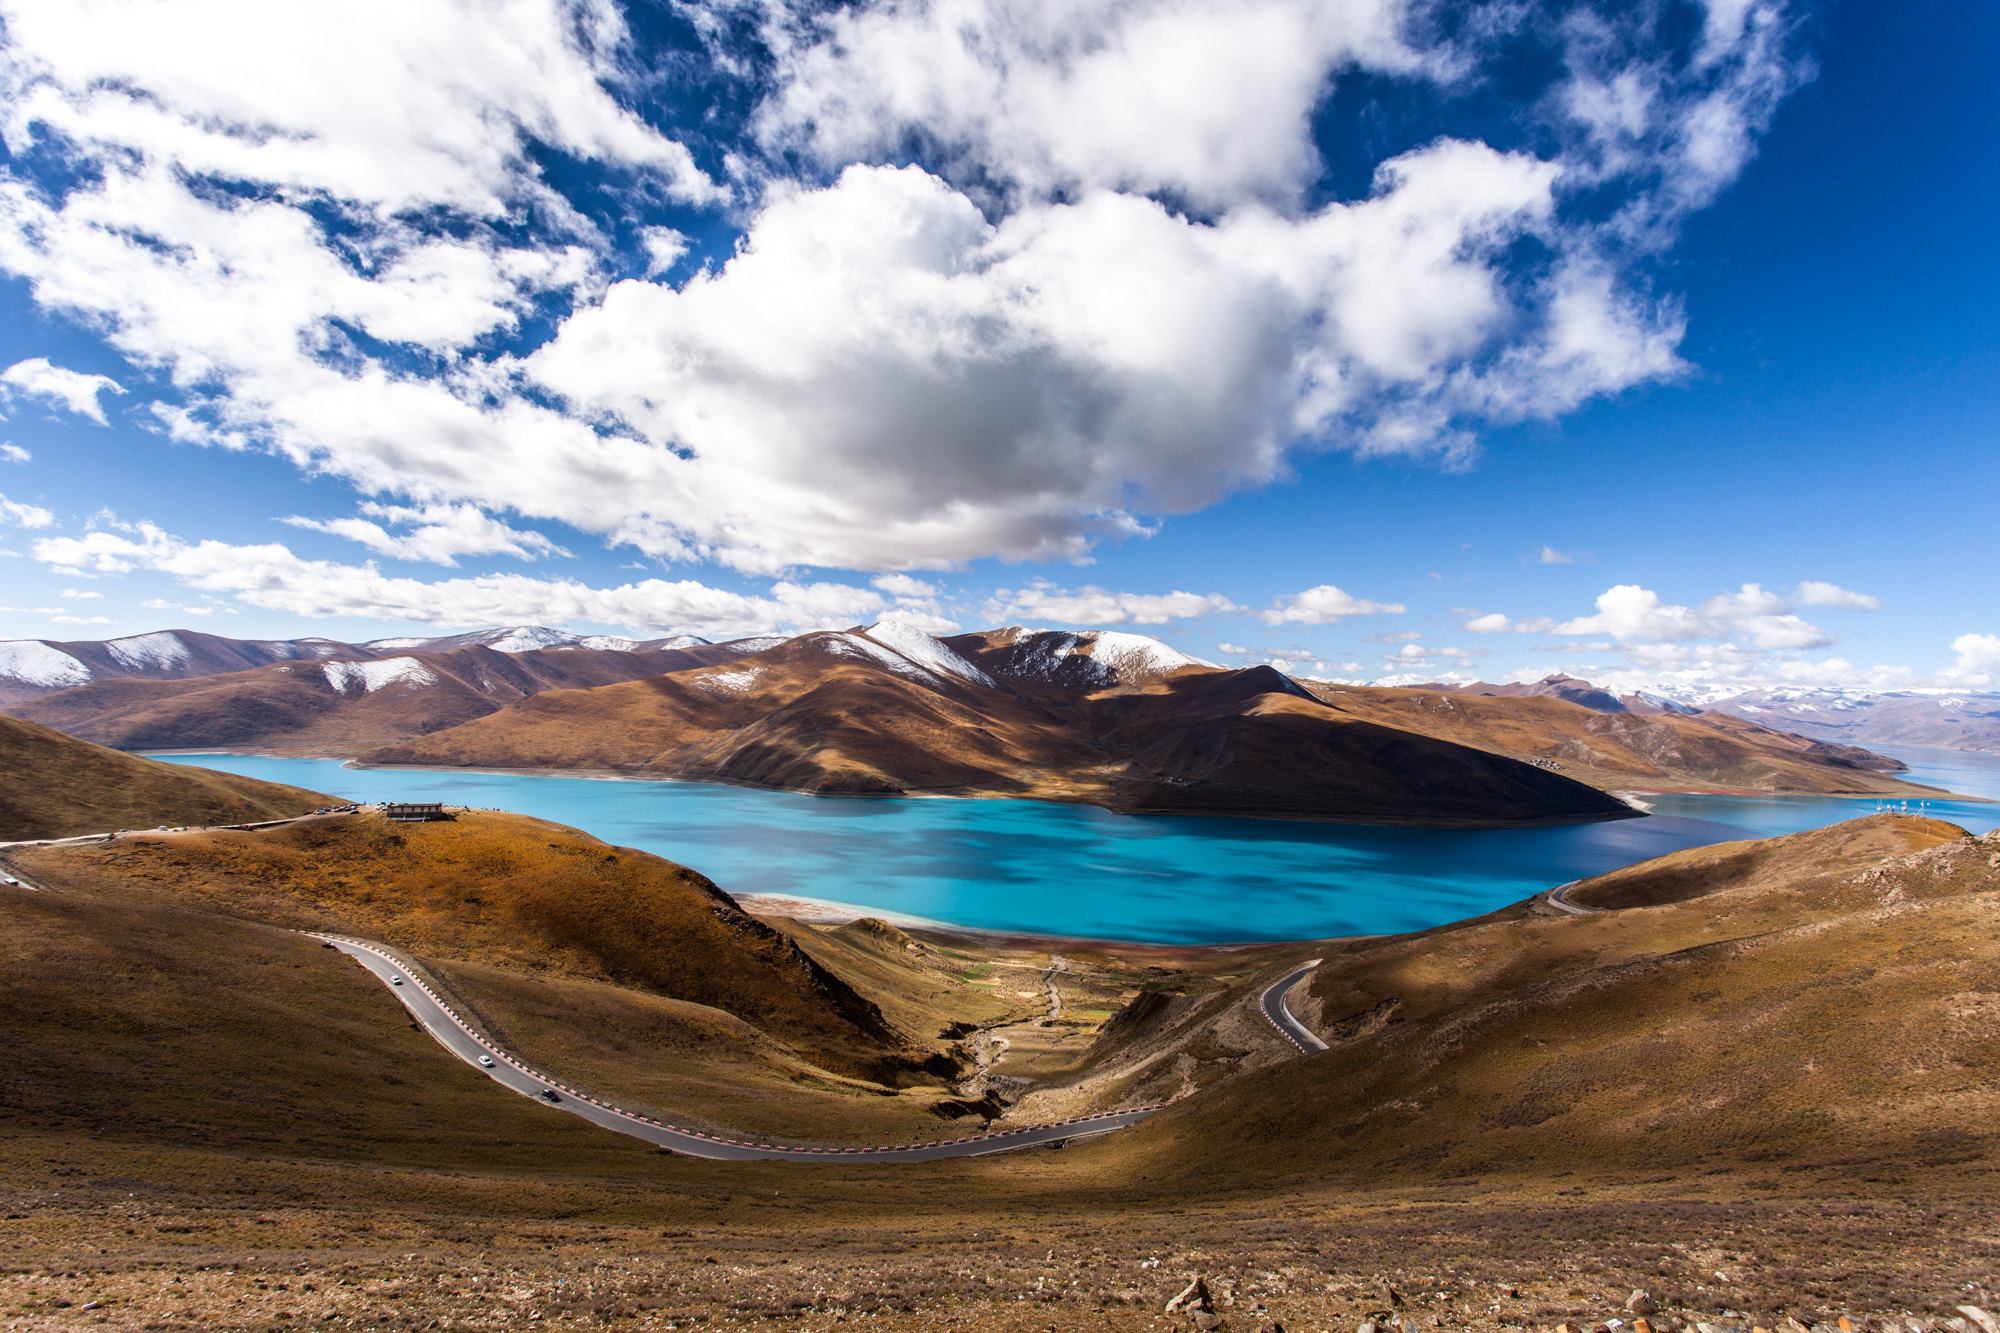 羊卓雍措,藏语意为"天鹅池",是西藏三大圣湖之一,也称羊卓雍湖(当地